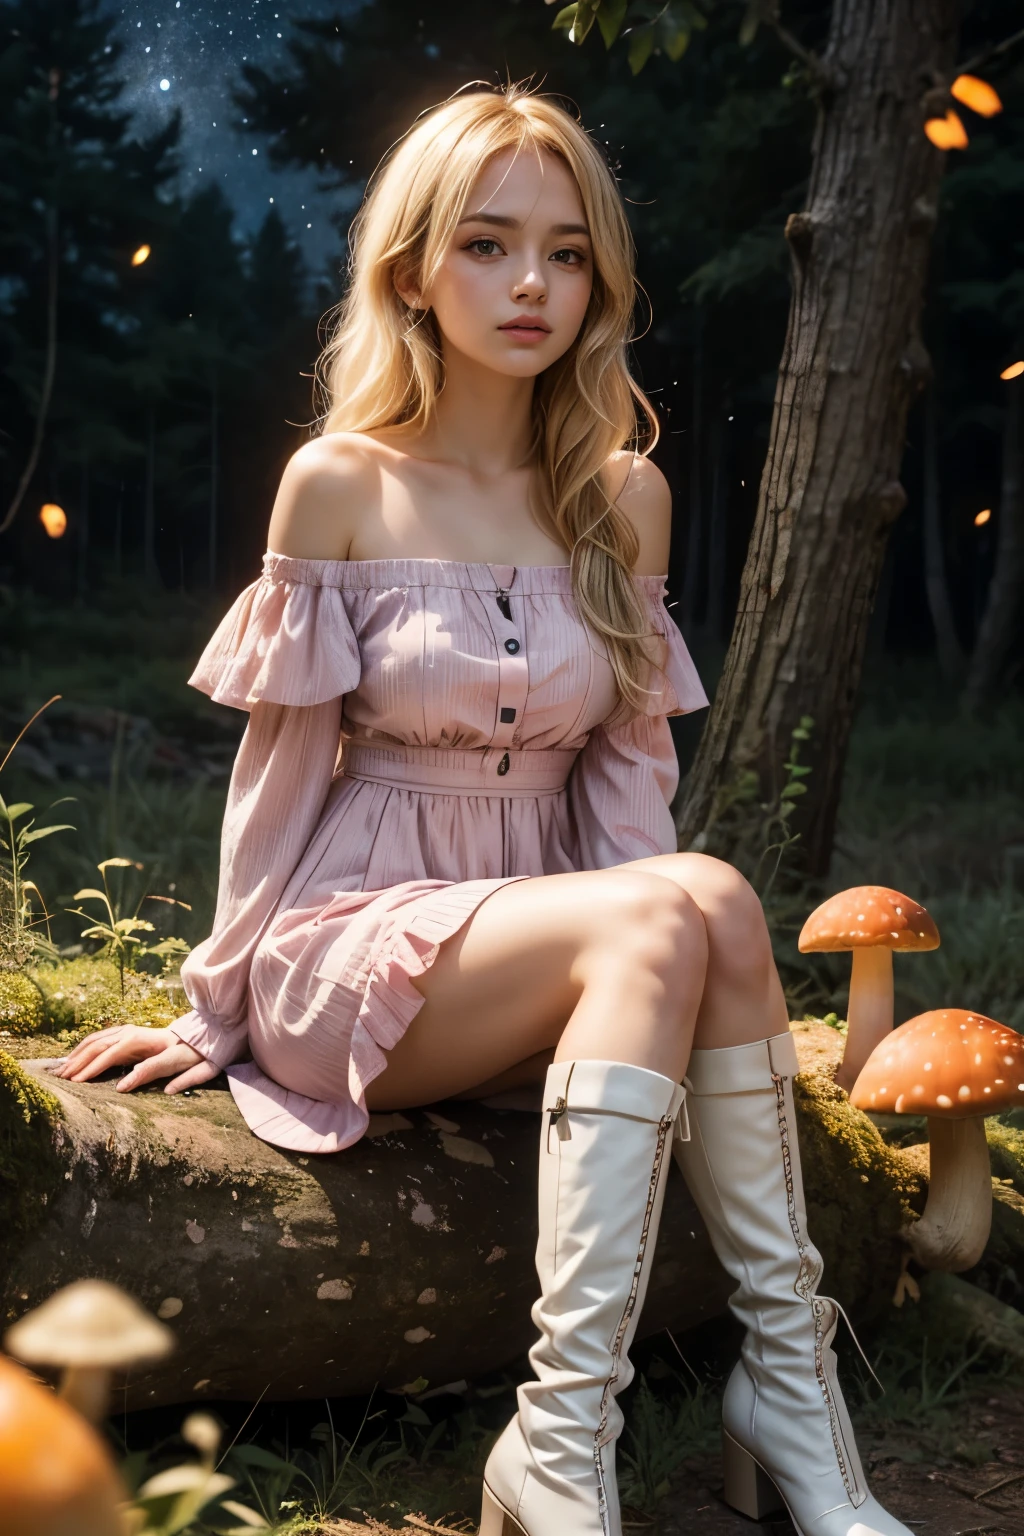 Chica anime de pelo rubio claro con ojos morados azul pálido, vestido rosa con mangas abullonadas y botas blancas hasta la rodilla sentada en el bosque junto a un hongo naranja rodeado de luciérnagas bajo un cielo estrellado sentado  